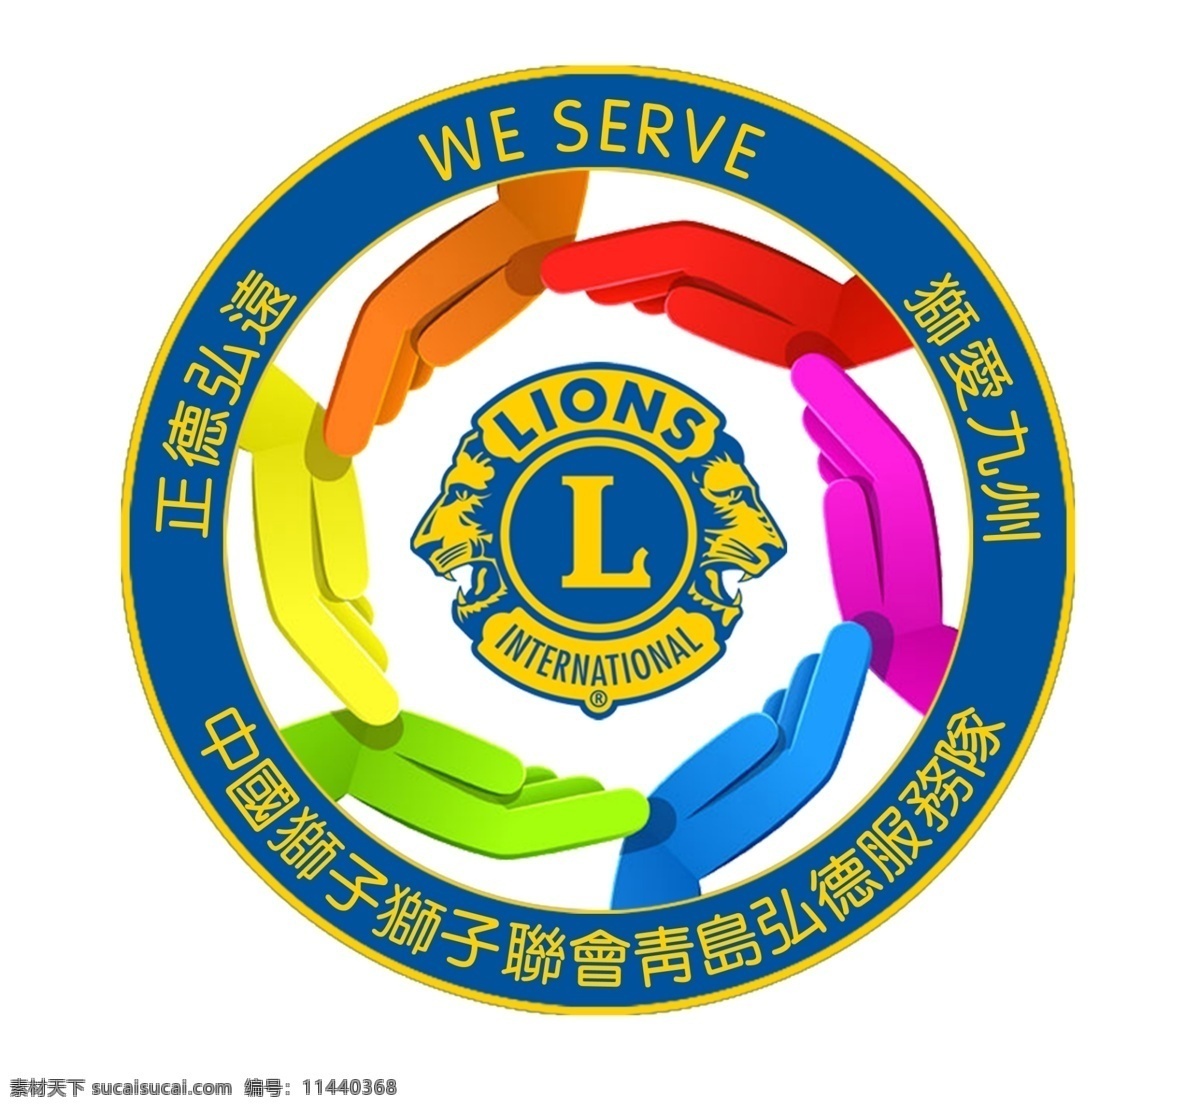 狮子会标志 狮子会 标志 中国狮子联会 中国狮子会 青岛狮子会 标志图标 公共标识标志